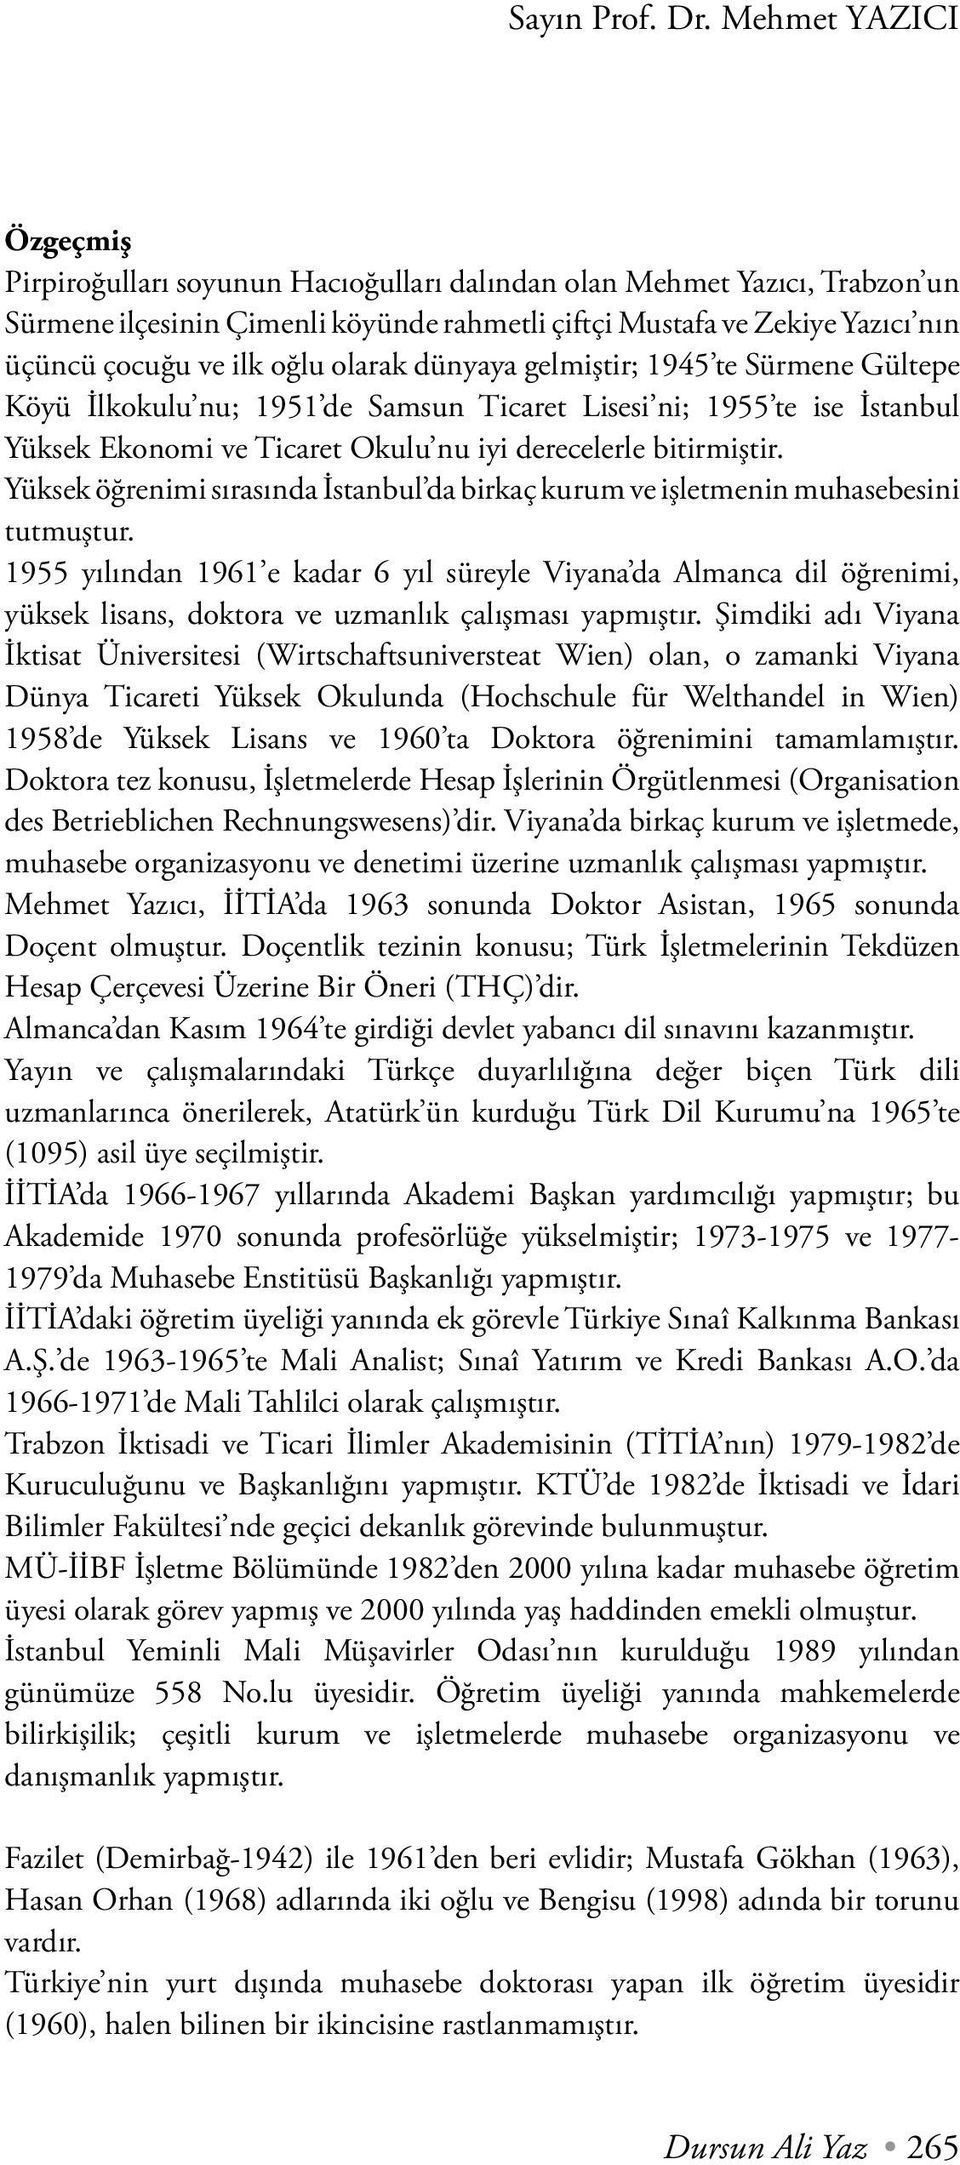 Yüksek öğrenimi sırasında İstanbul da birkaç kurum ve işletmenin muhasebesini tutmuştur.